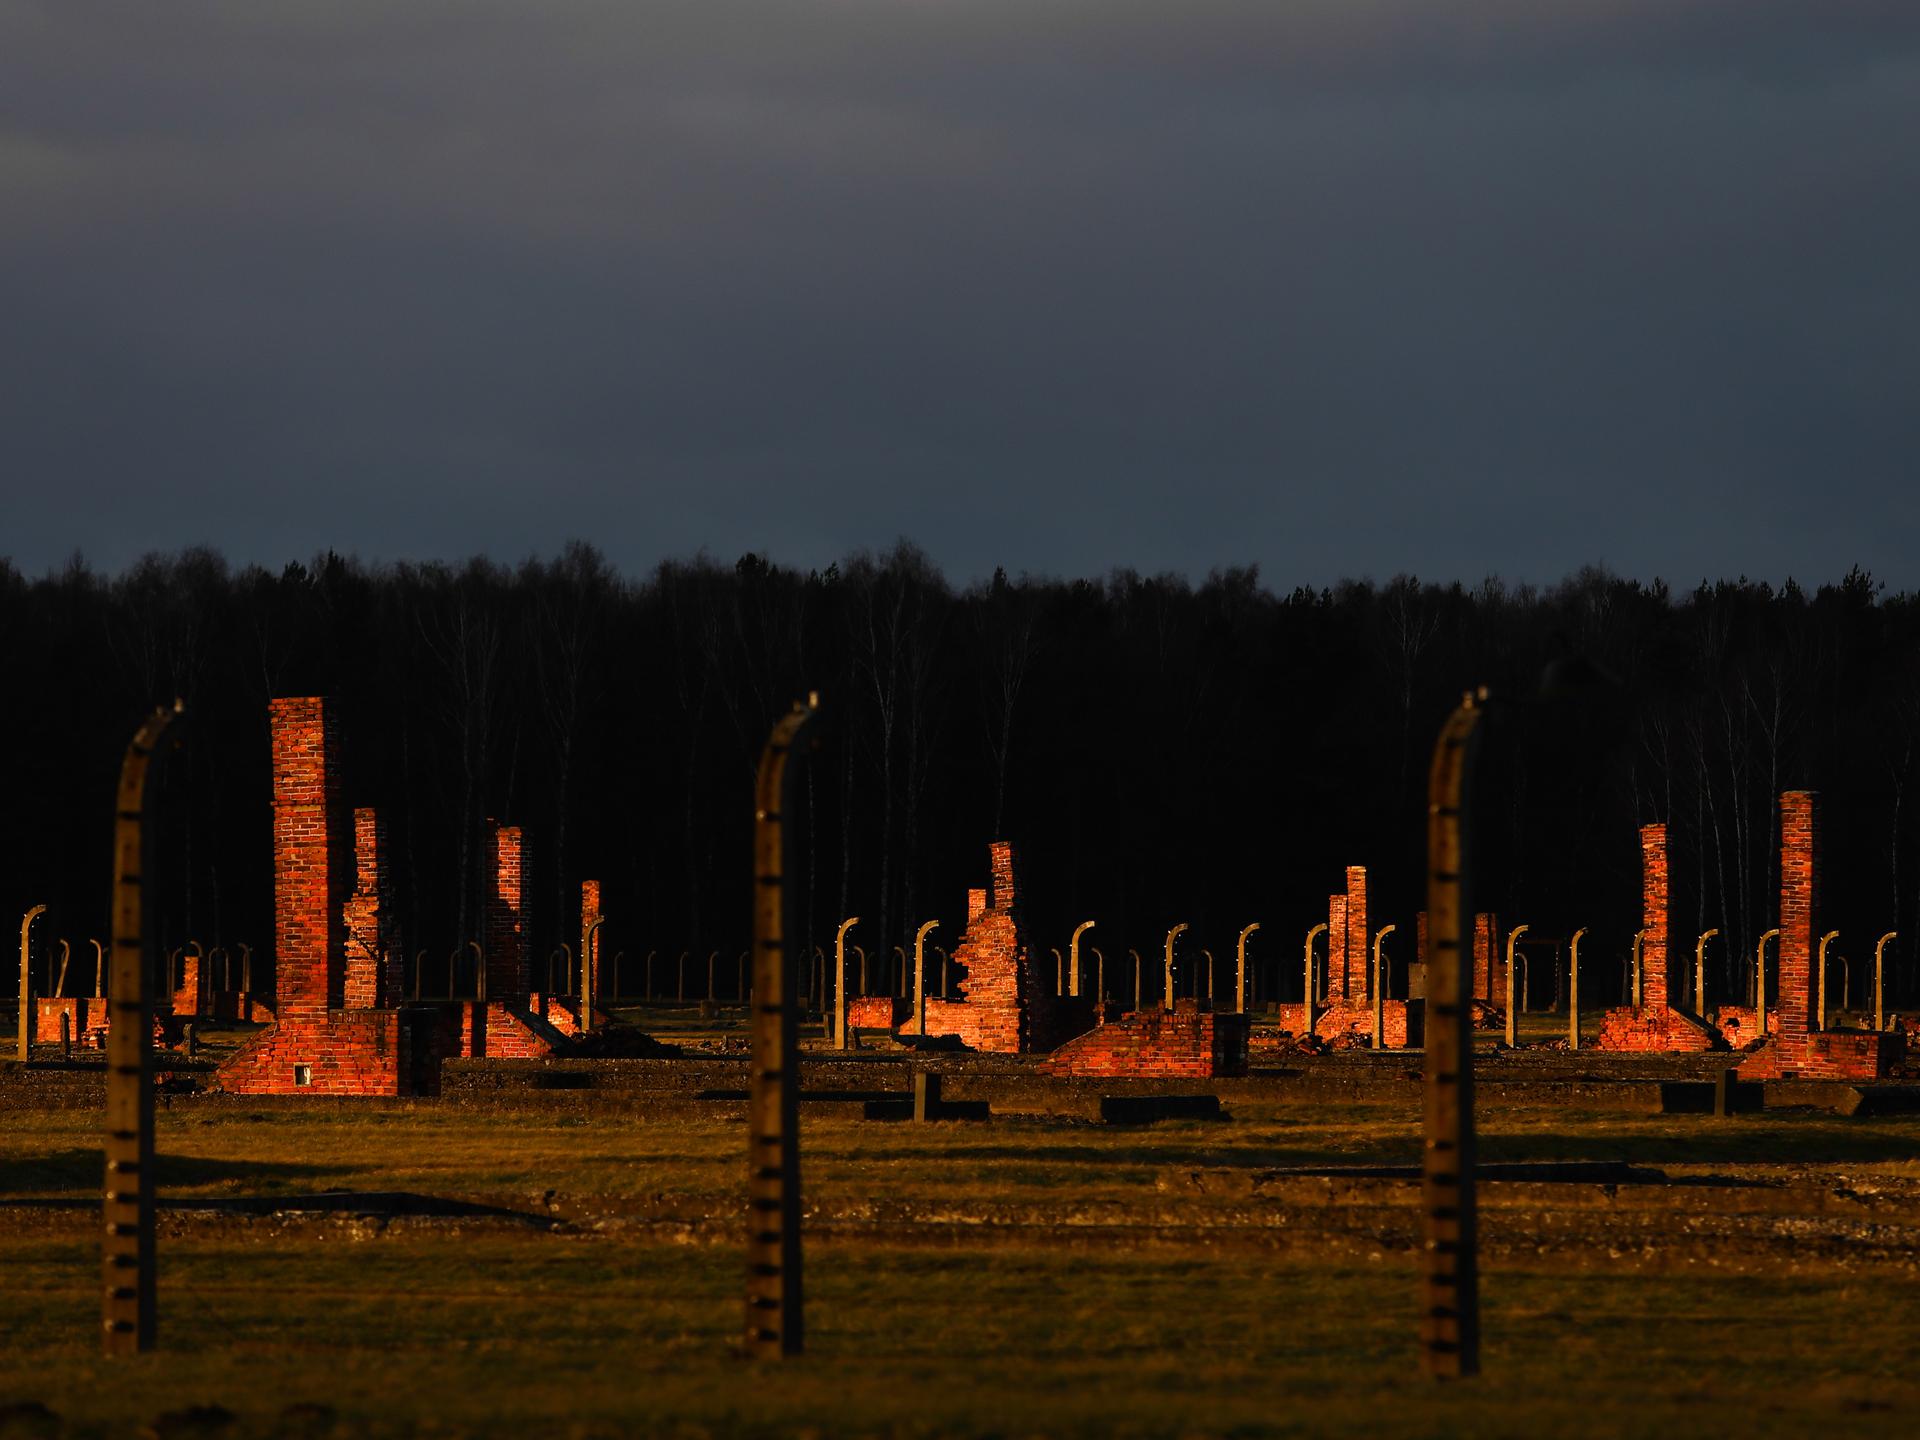 Blick auf das Lagergelände des ehemaligen deutschen nationalsozialistischen Konzentrationslages Auschwitz II-Birkenau in Brzezinka bei Oswiecim, Polen, am 3. Januar 2022. Zu sehen sind die Reste der zerstörten Baracken hinter Stacheldrahtumzeunung im Abendlicht.